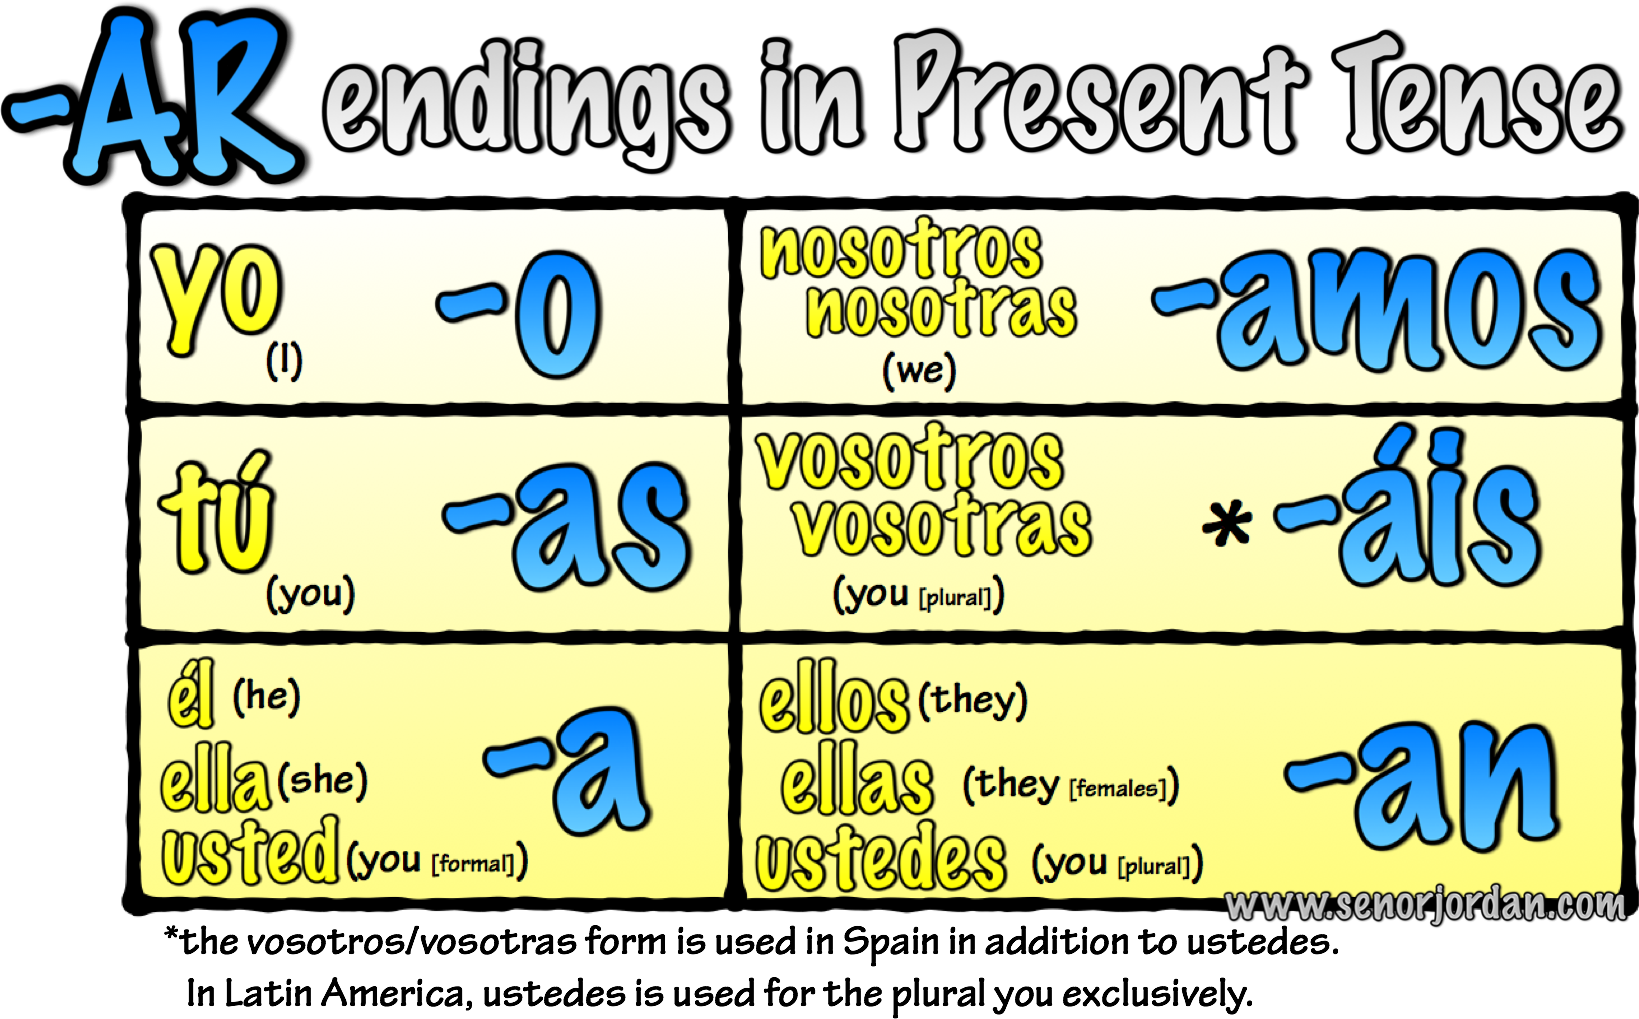 Spanish Present Tense Endings Chart